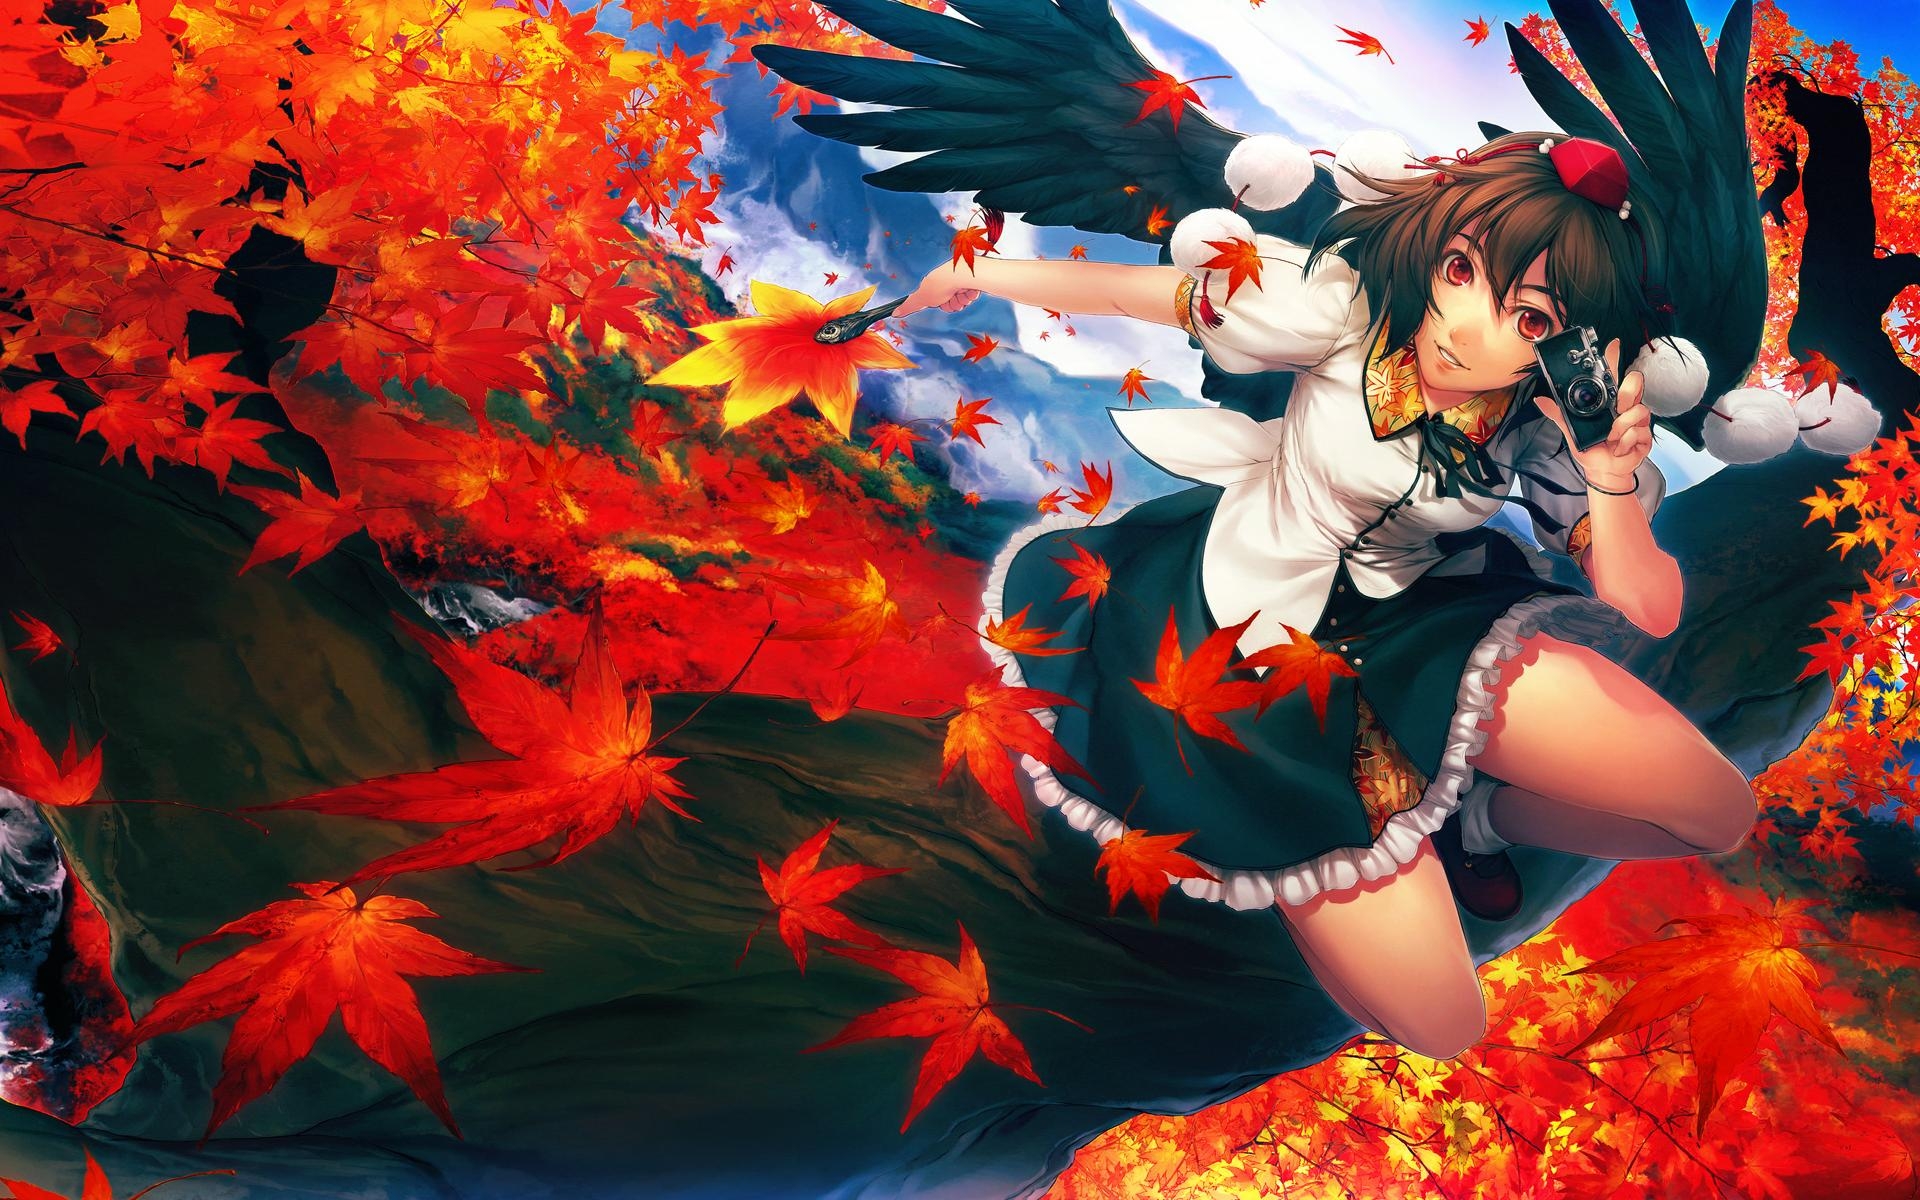 Touhou, wings, dress, leaves, cameras, red eyes, Shameimaru Aya, anime girls, tengu, Simoshi (Artist) - desktop wallpaper